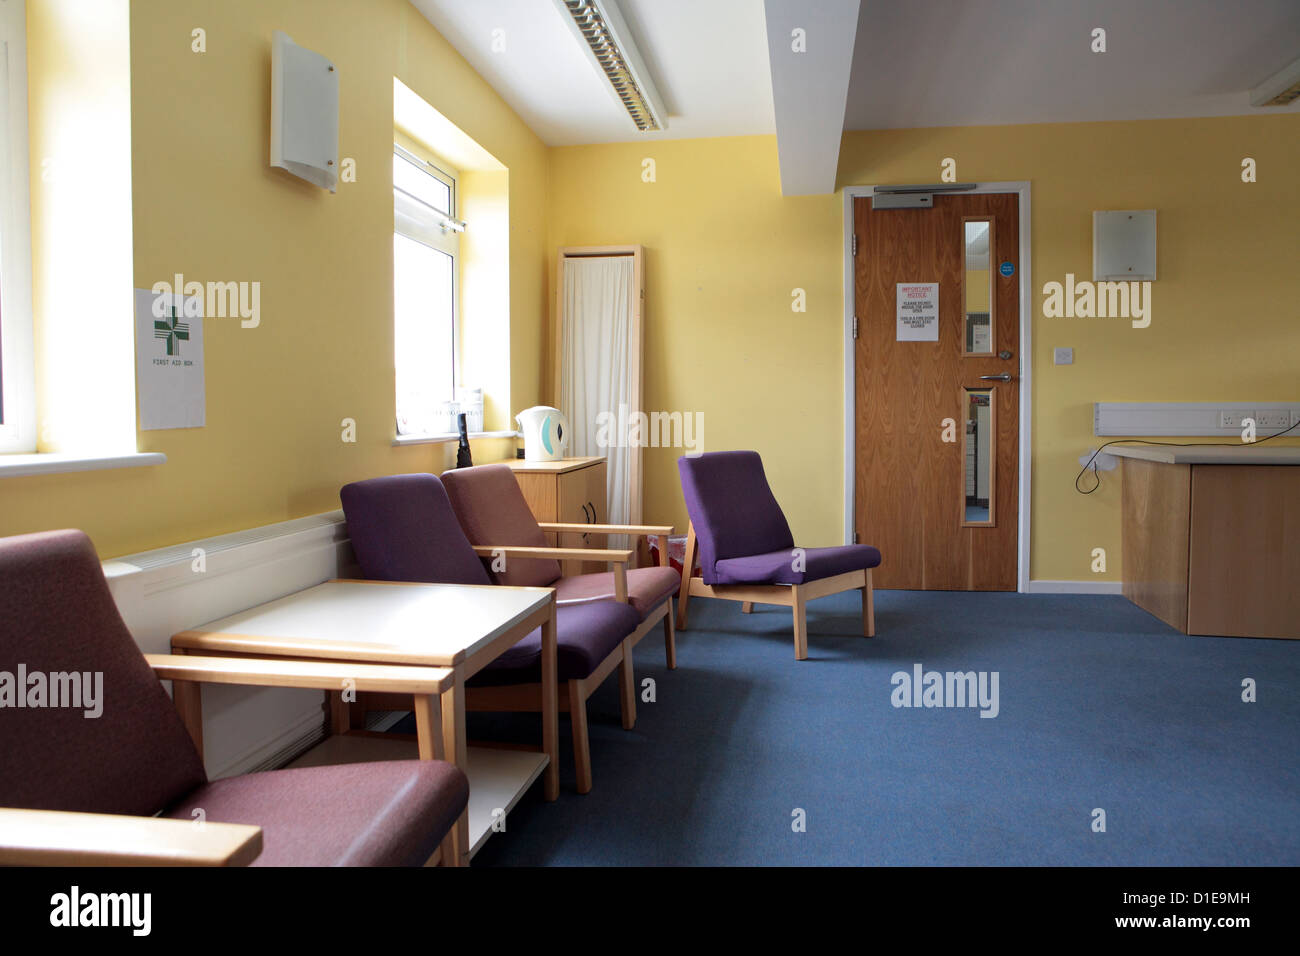 Leeres NHS-Büro, Wartezimmer, Einrichtung institutionelle, geschlossene aufgrund der Sparpolitik Kürzungen, England, UK Stockfoto